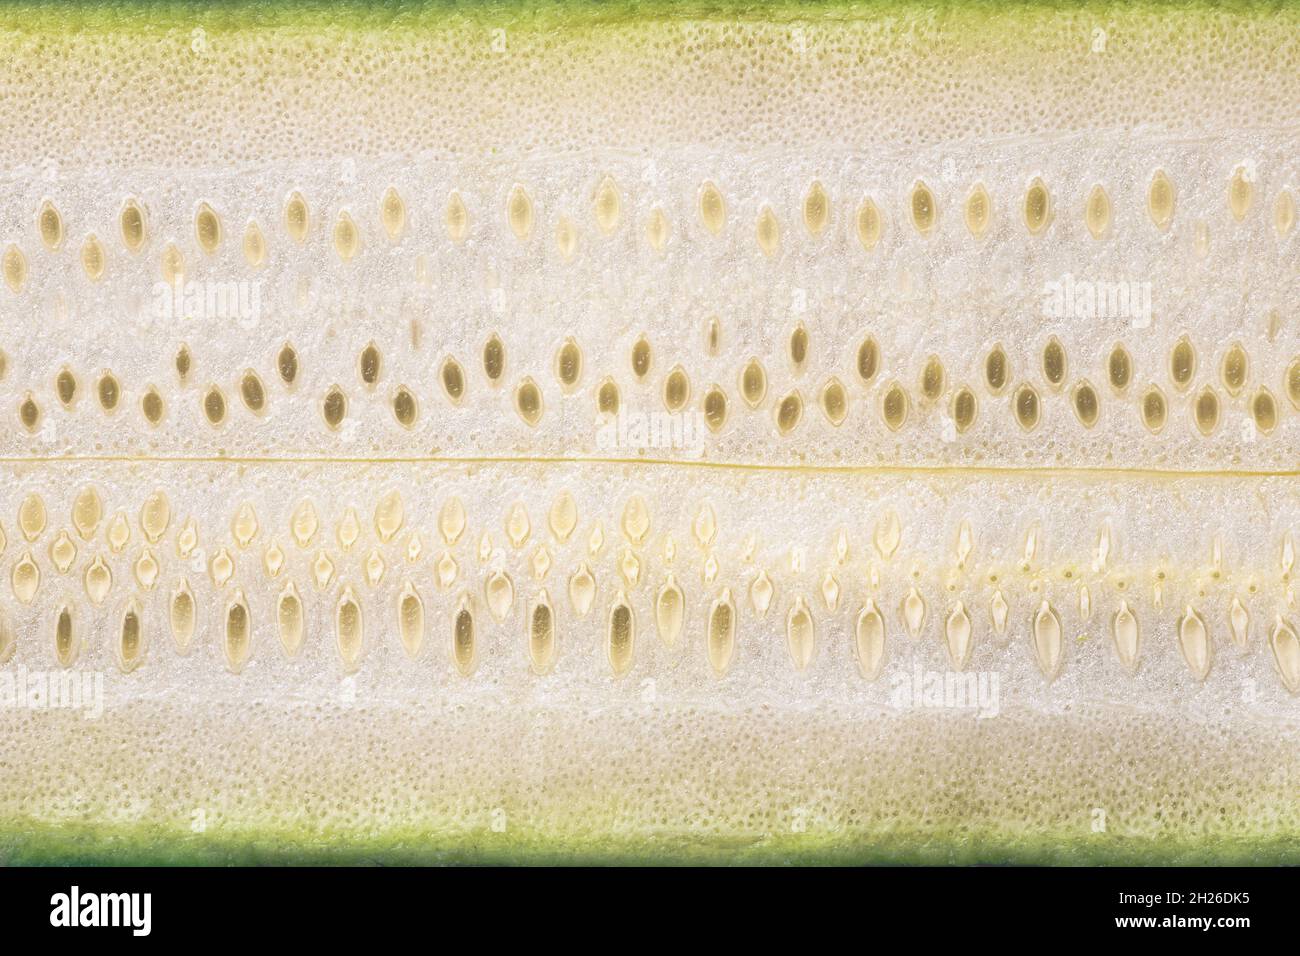 Primer plano de una calabacín en rodajas con semillas Foto de stock